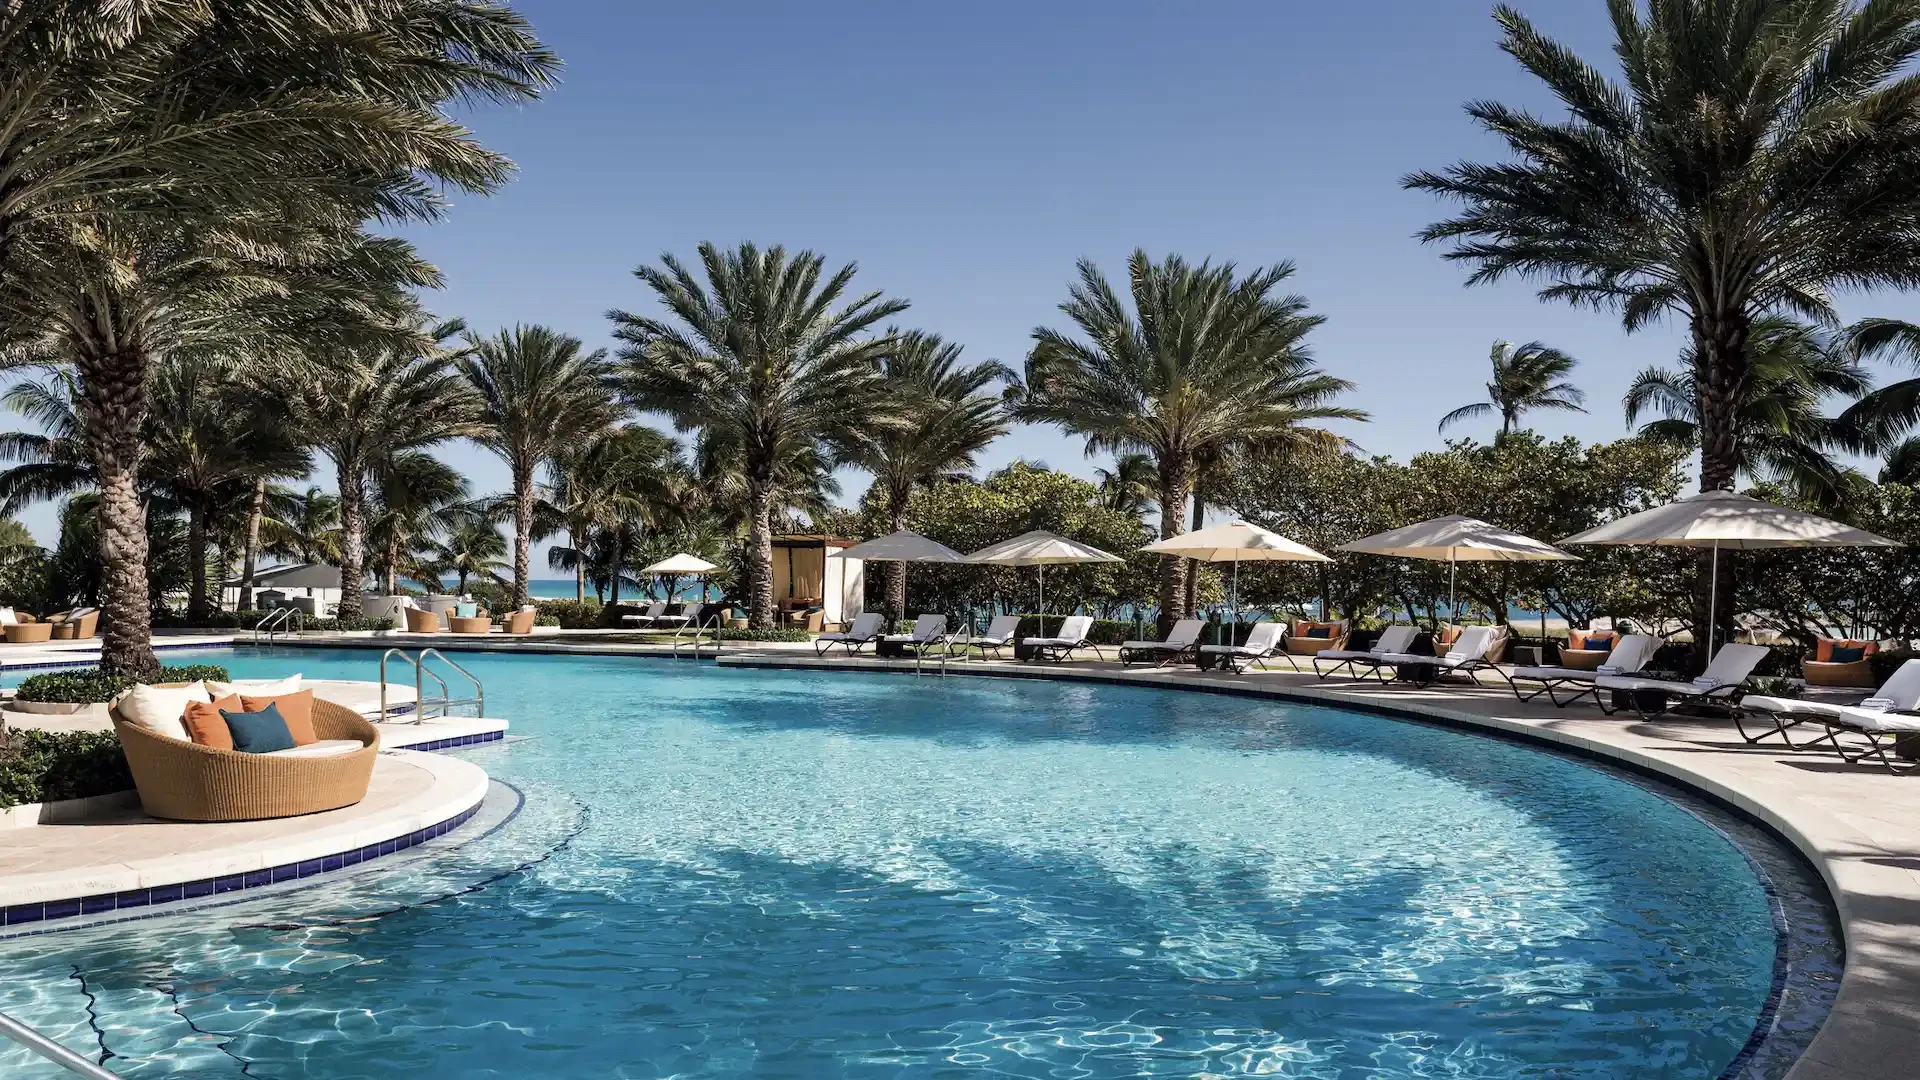 5 hoteles de lujo en Miami para alojarse y disfrutar de la ciudad